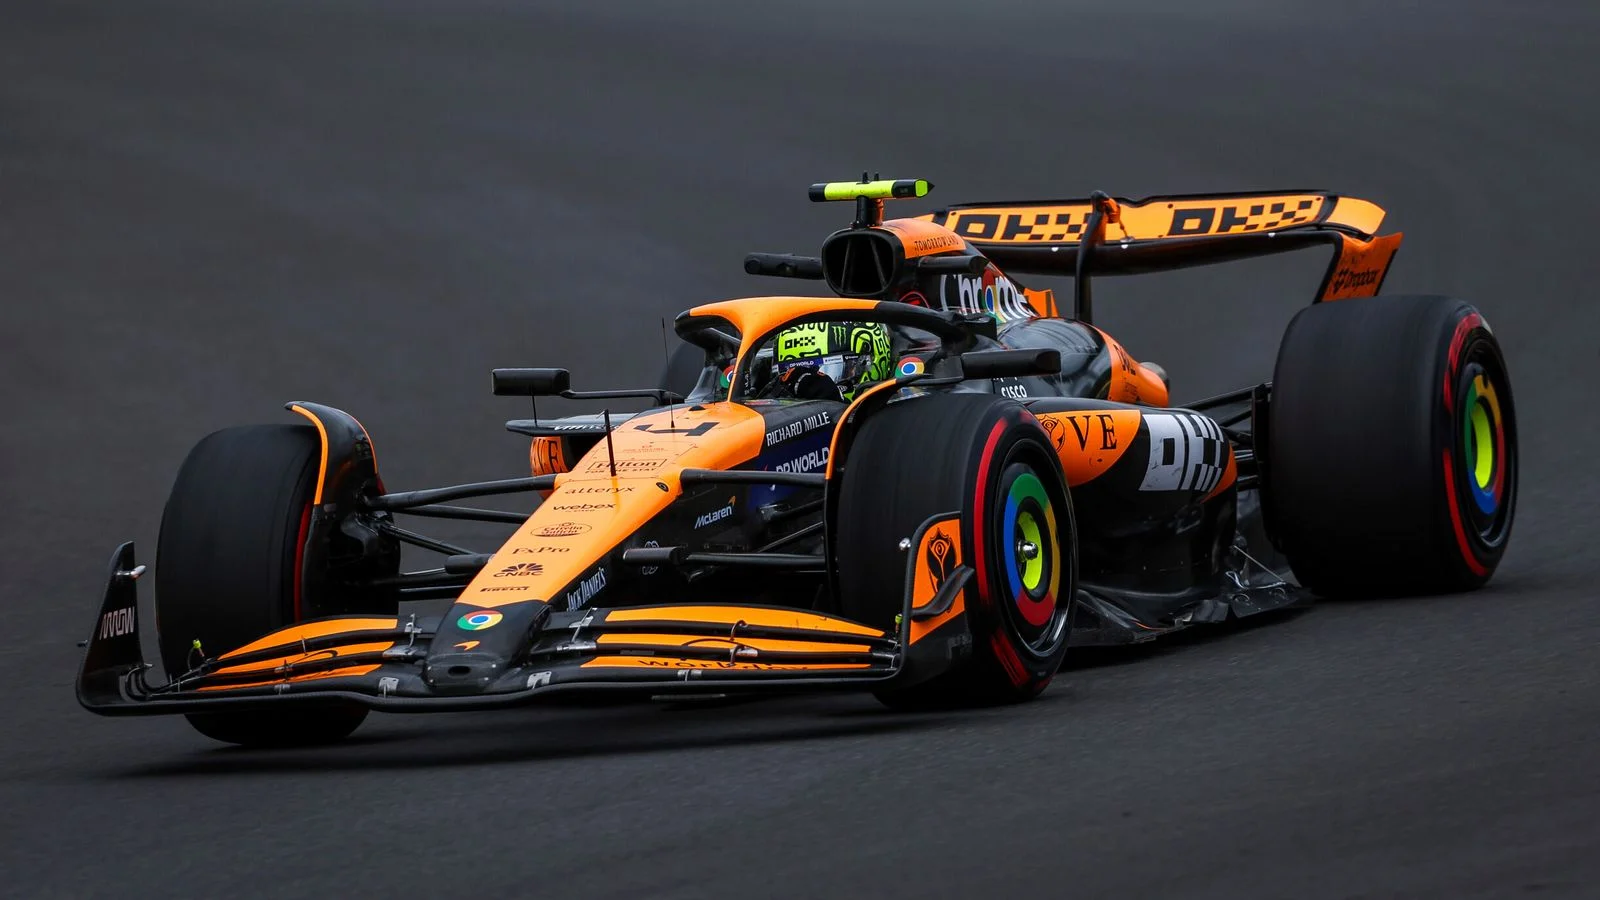 McLaren 1-2 in Belgium second practice session